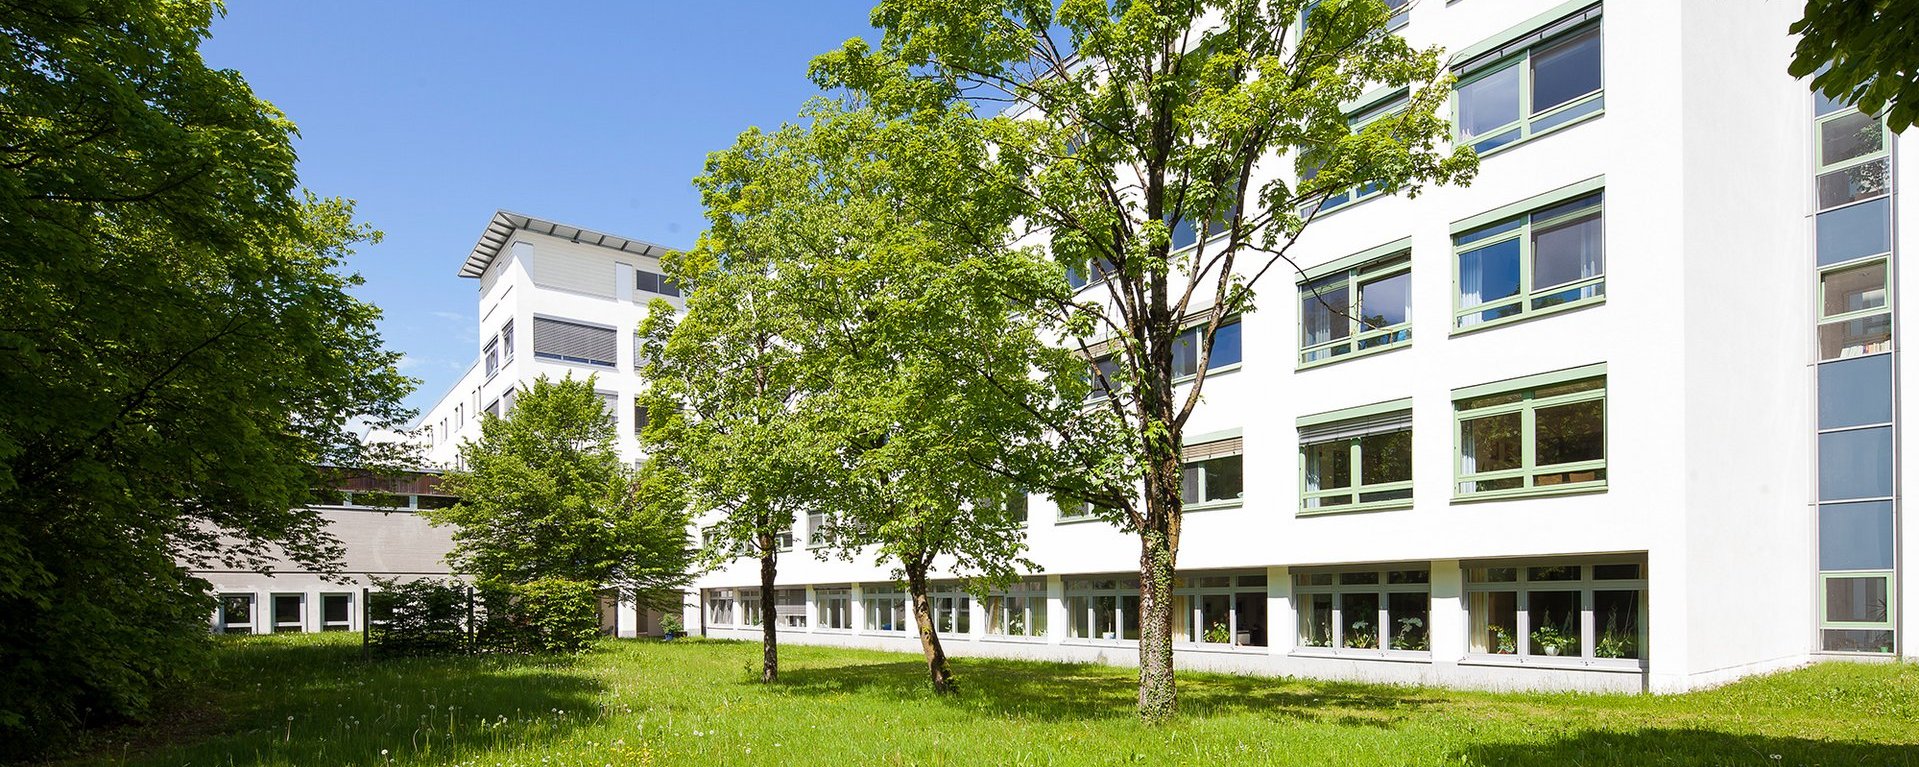 Der Garten vor den Wertachkliniken mit grünen Bäumen bei strahlend blauem Himmel